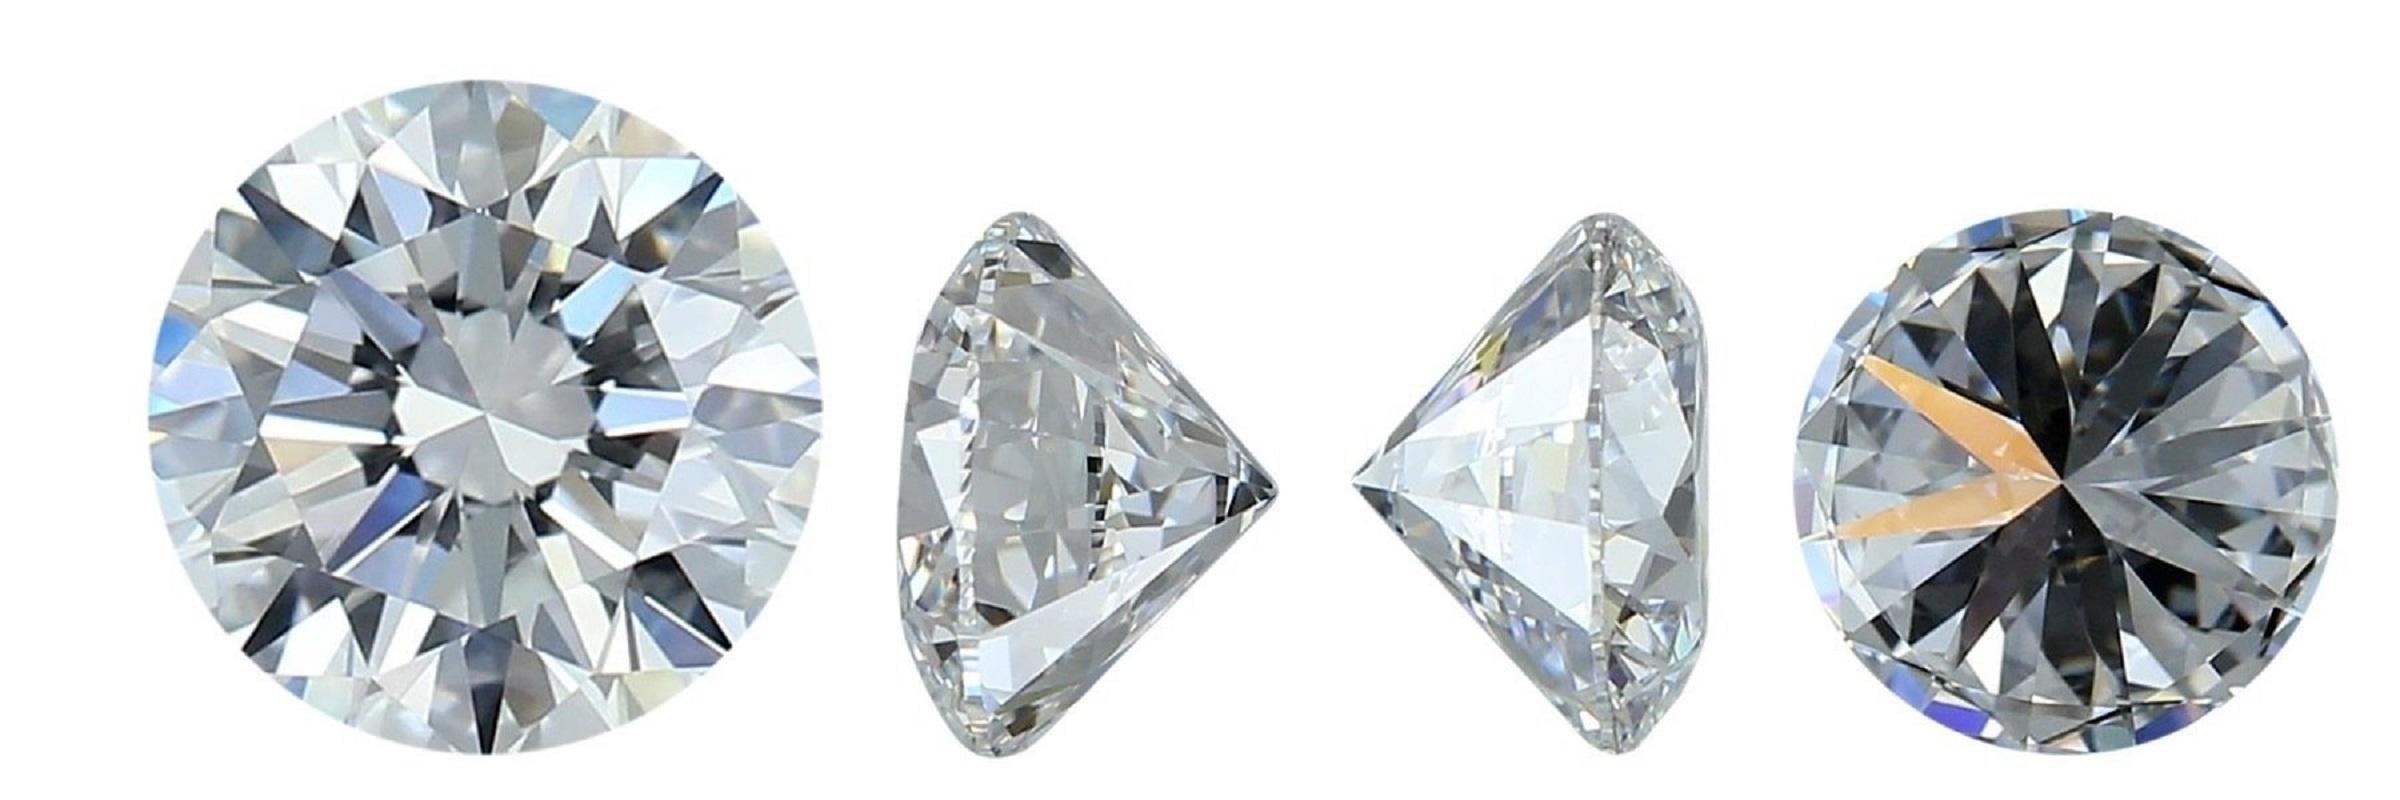 Atemberaubender runder Brillant im Idealschliff mit 0,85 Karat H VVS2 Extrem glänzend und funkelnd.
Dieser Diamant wird mit einem GIA-Zertifikat geliefert und ist mit einer Lasergravur versehen.

SKU: C-DSPV-167351-17
GIA 3455301598